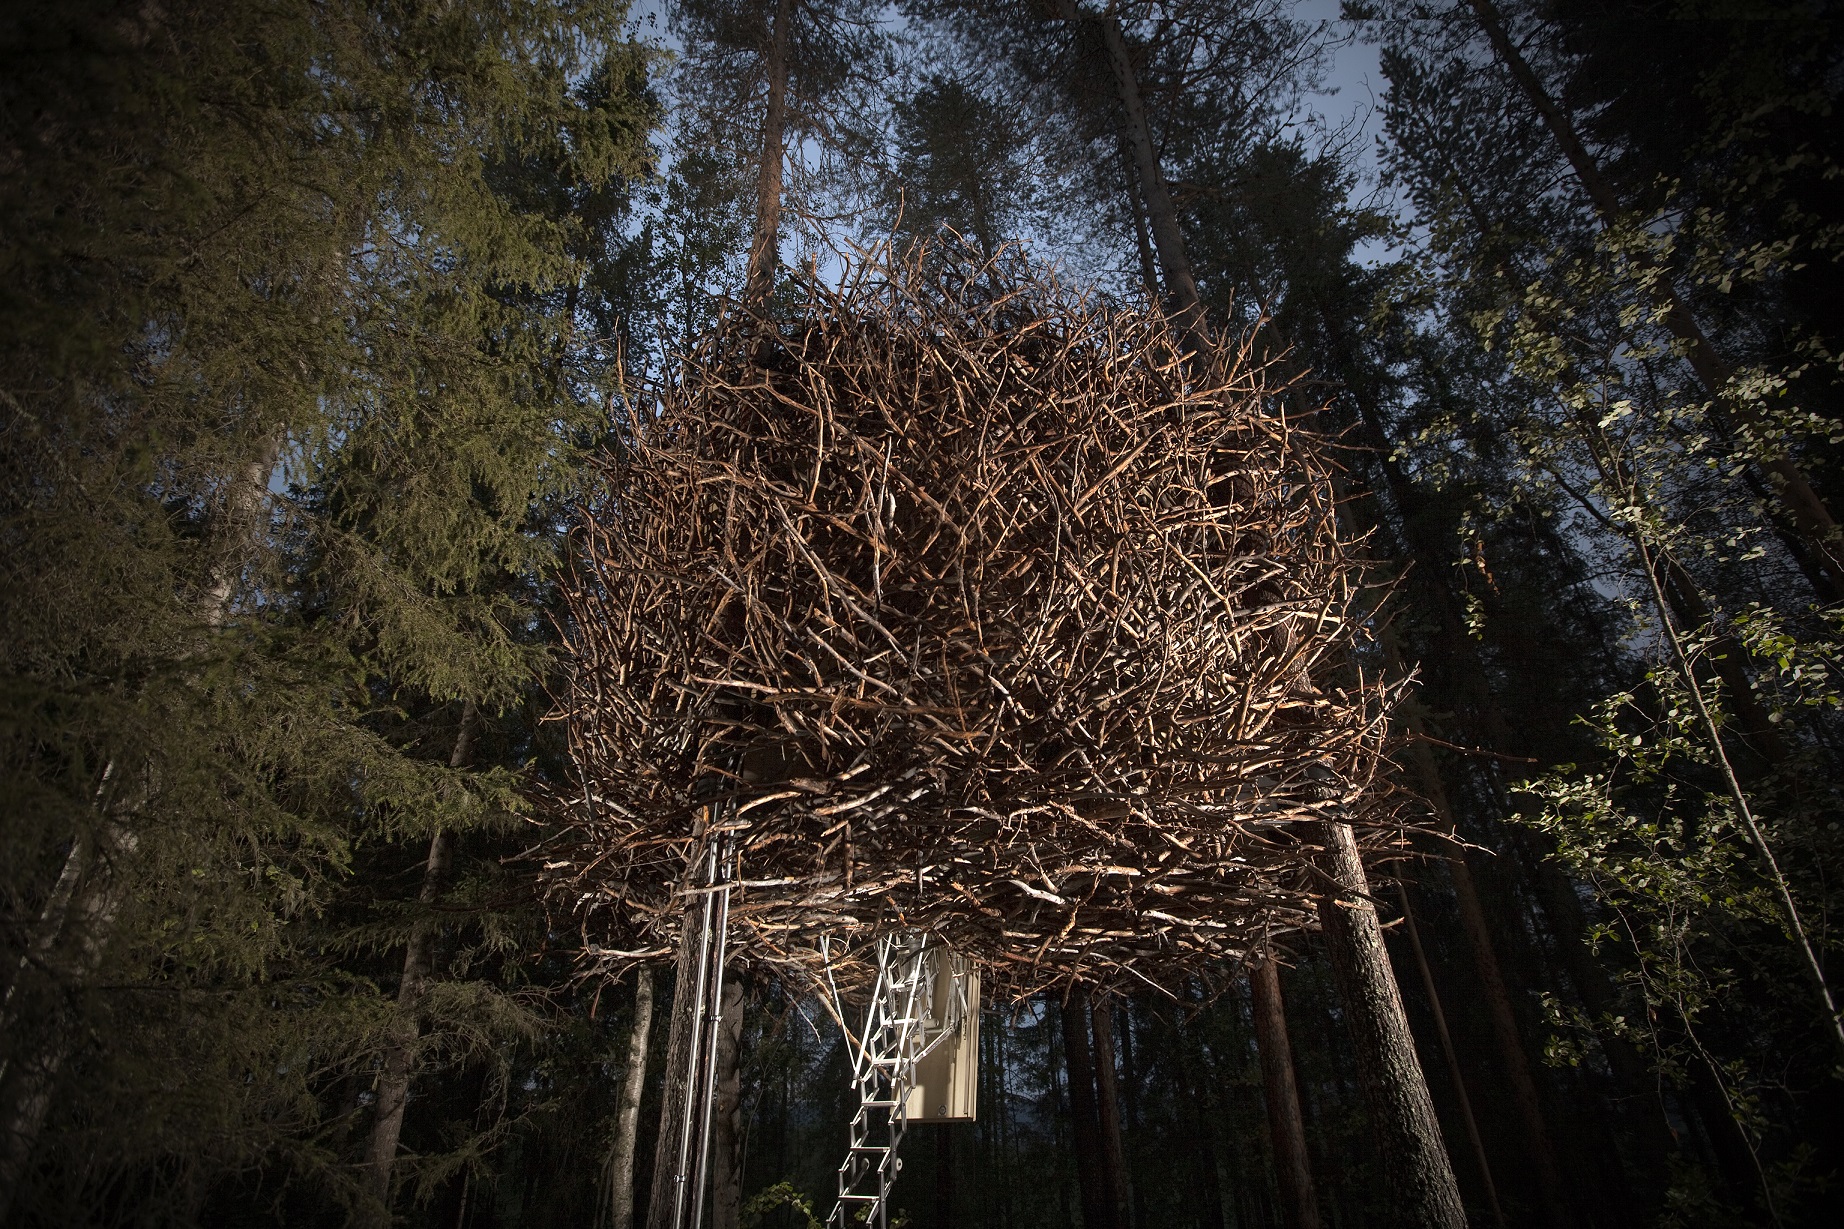 Birds Nest treehouse